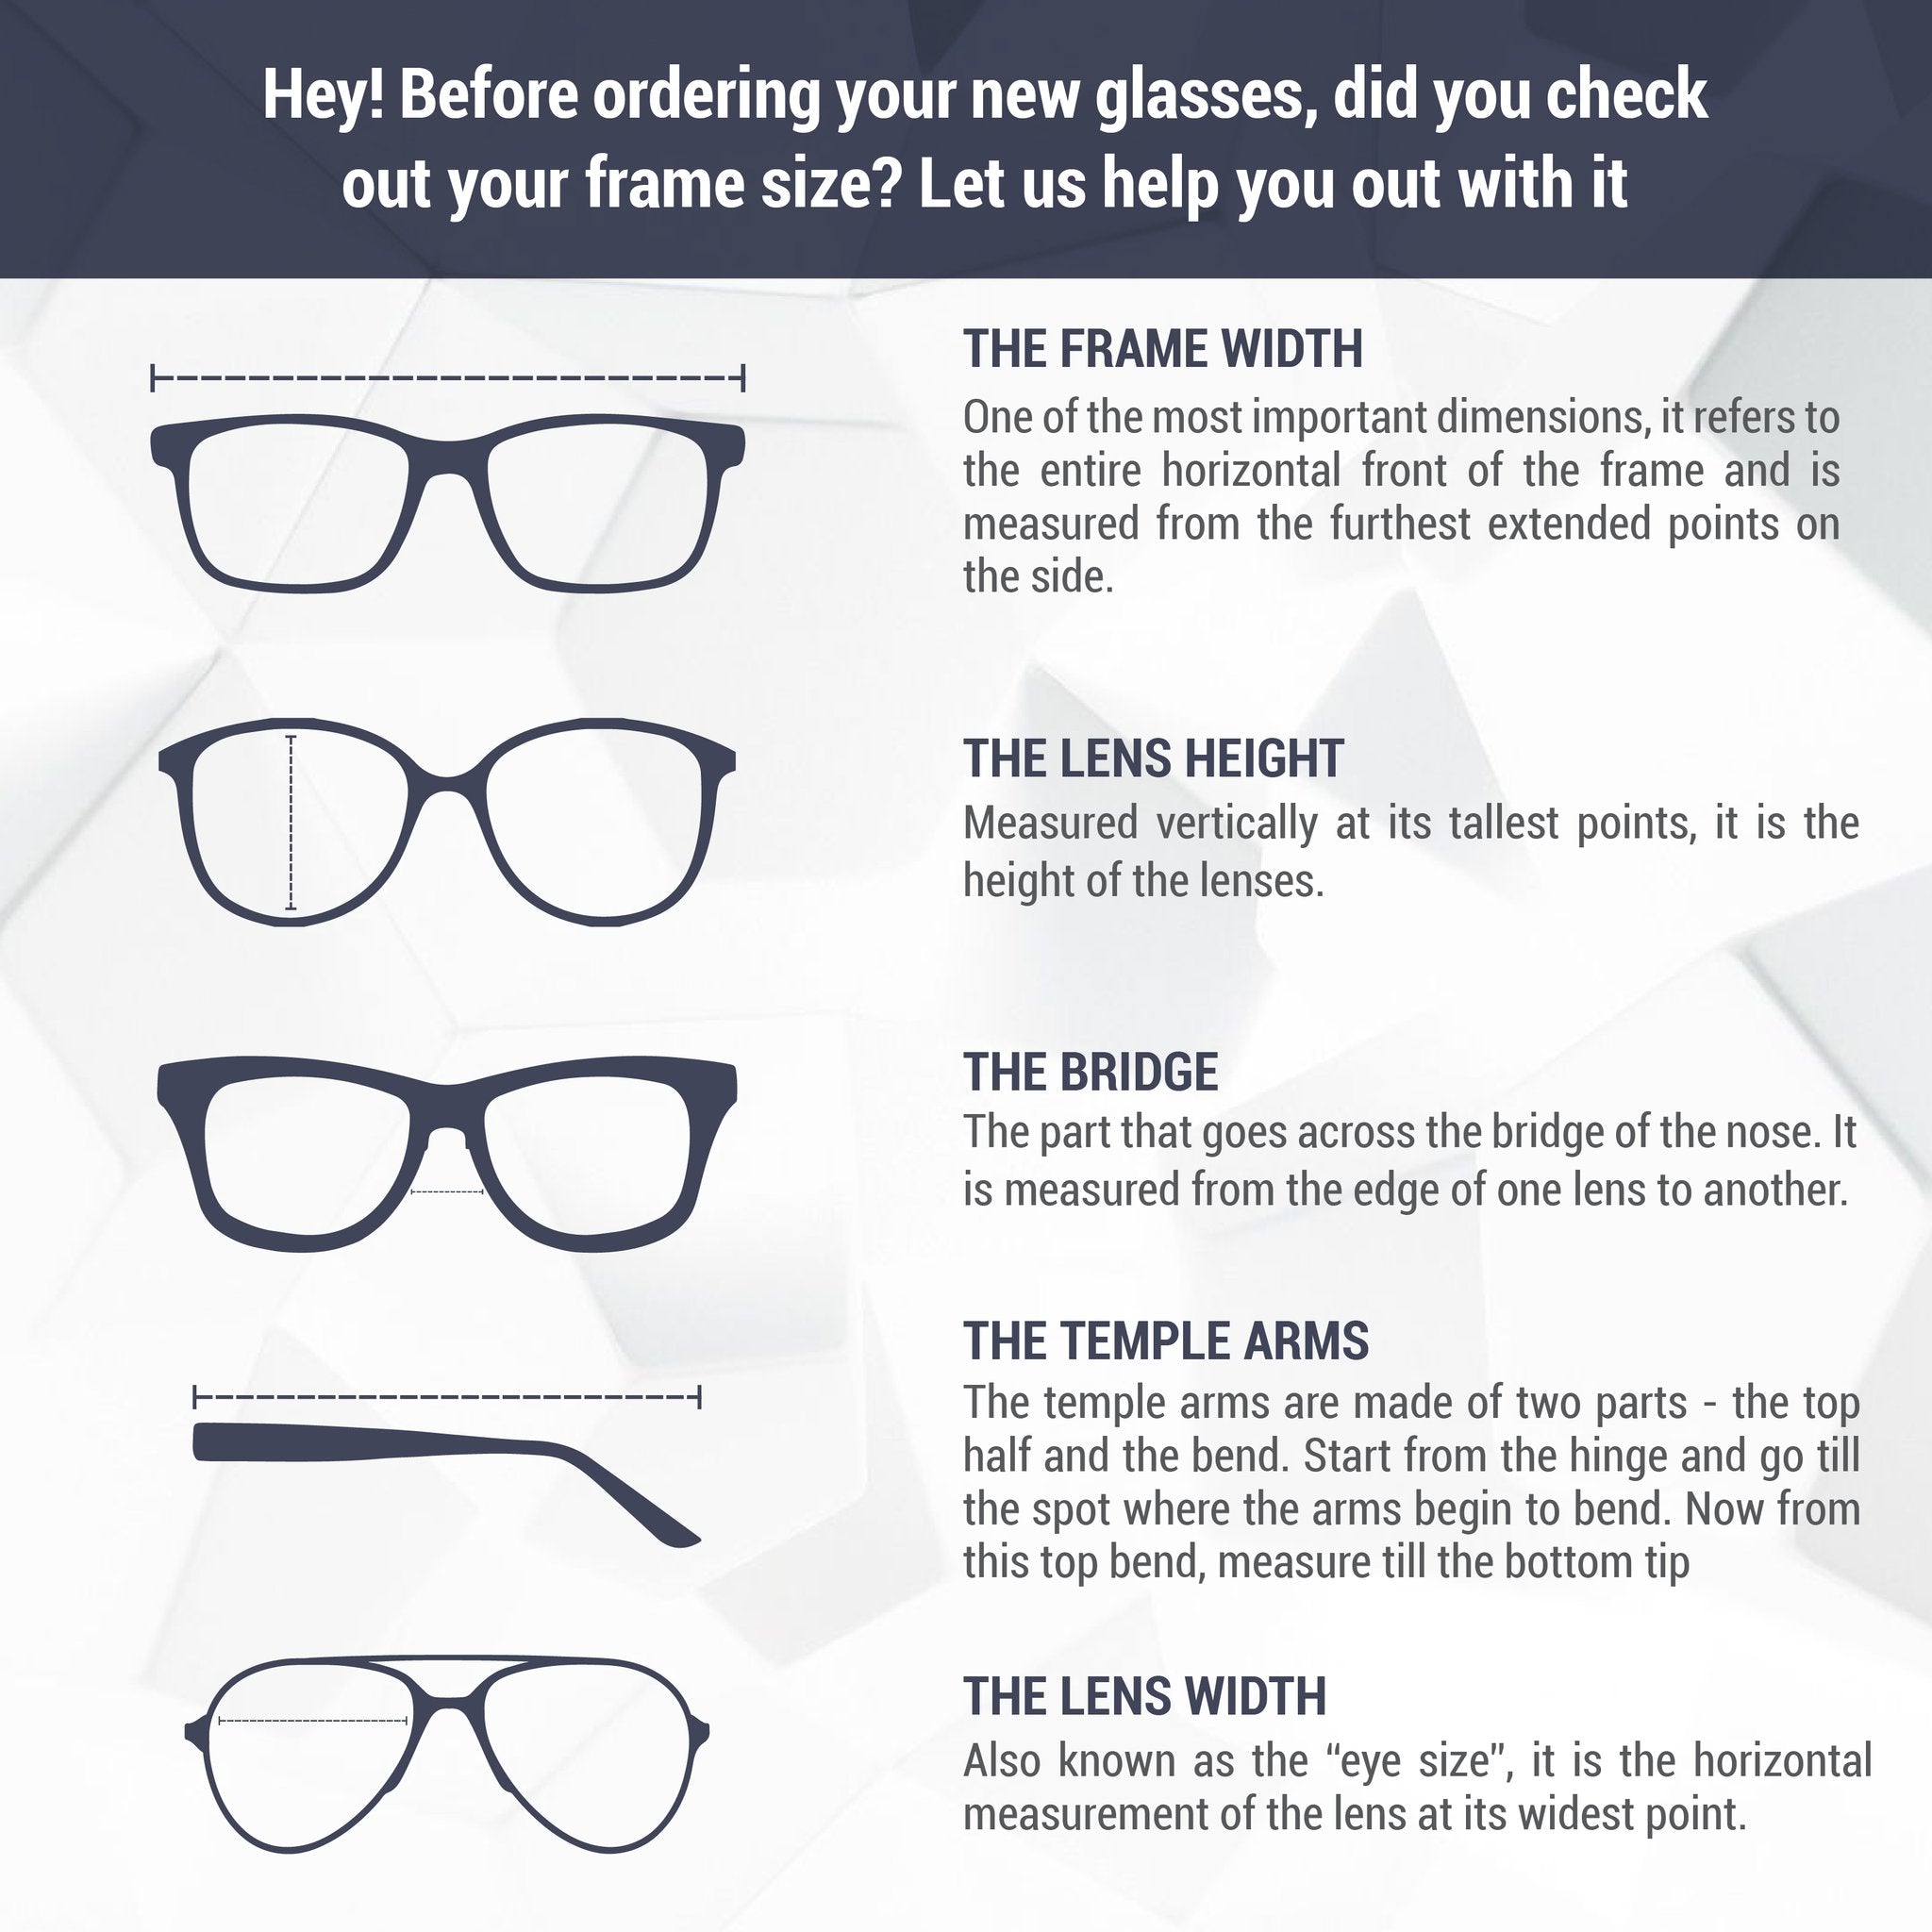 Monture de lunettes Calvin Klein | Modèle CK19105 - Marron